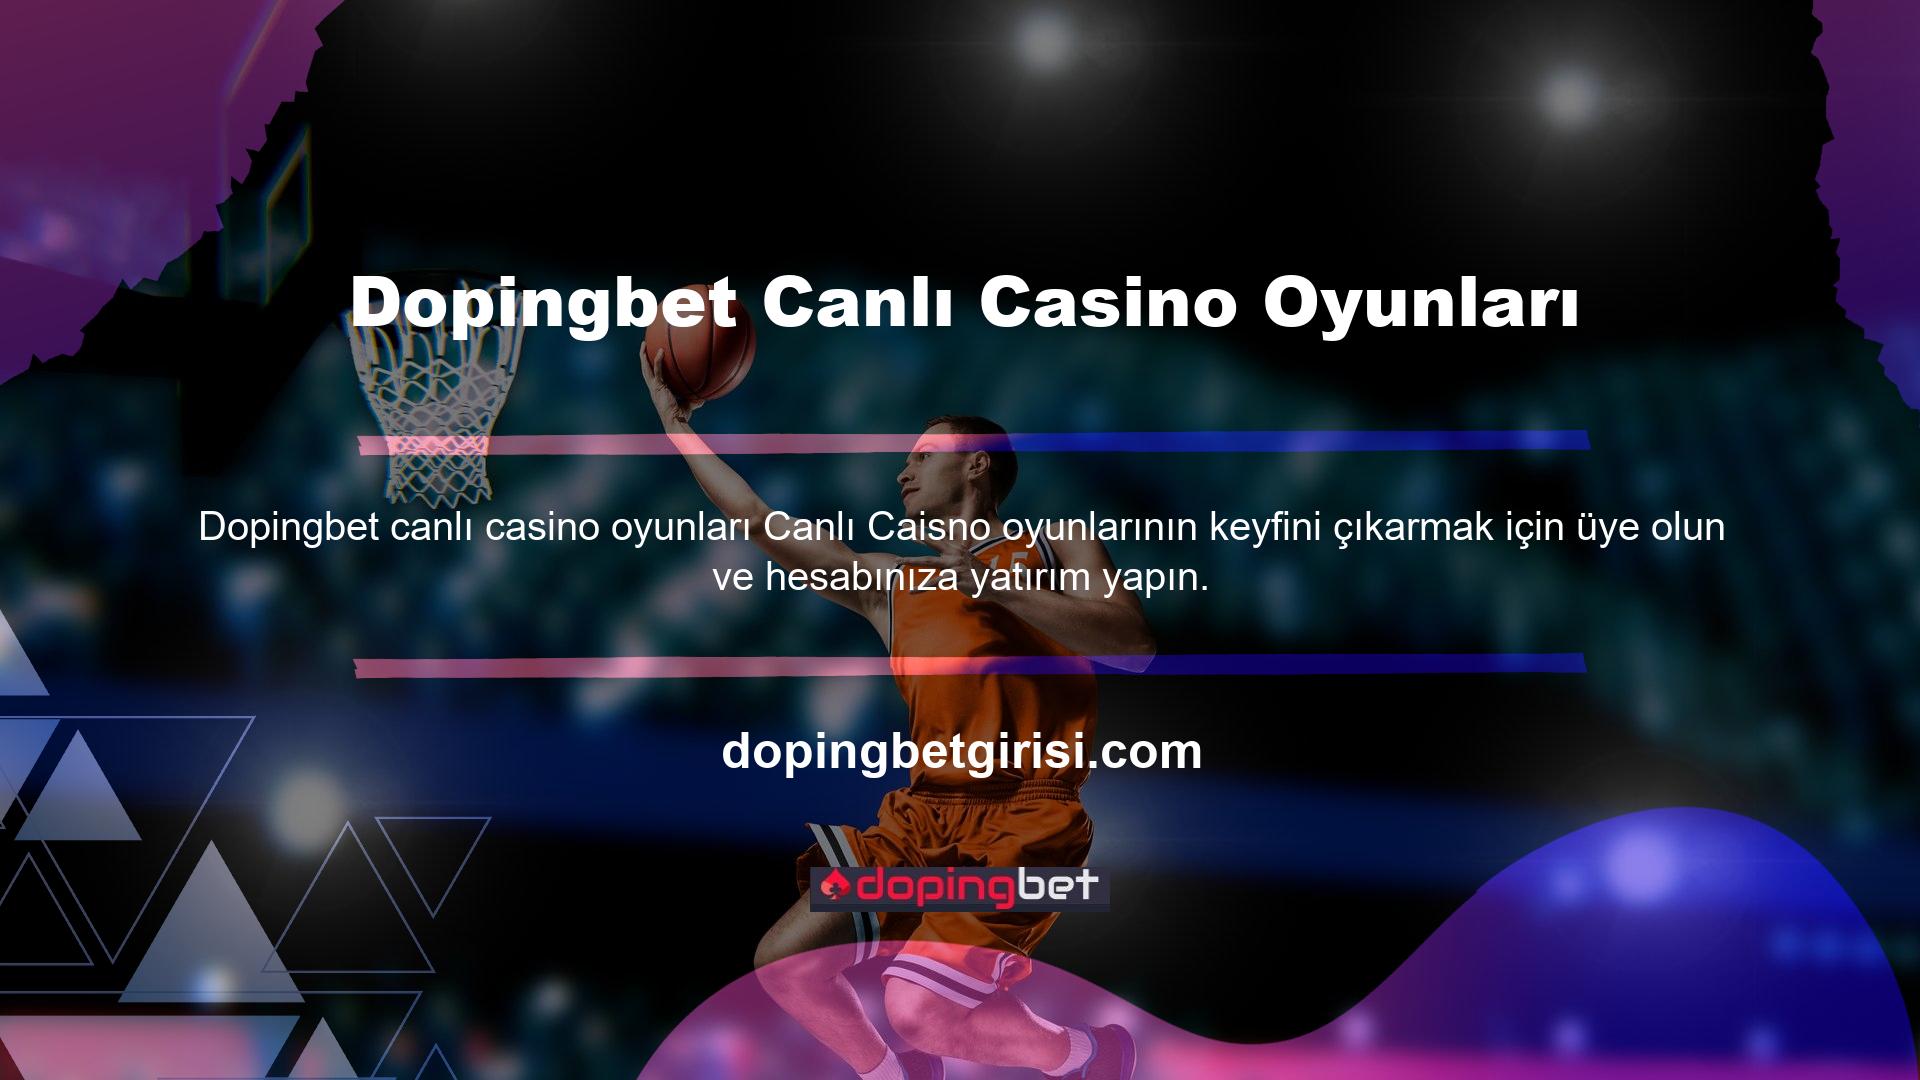 Katılmak için Dopingbet canlı casino oyunları Oyunları